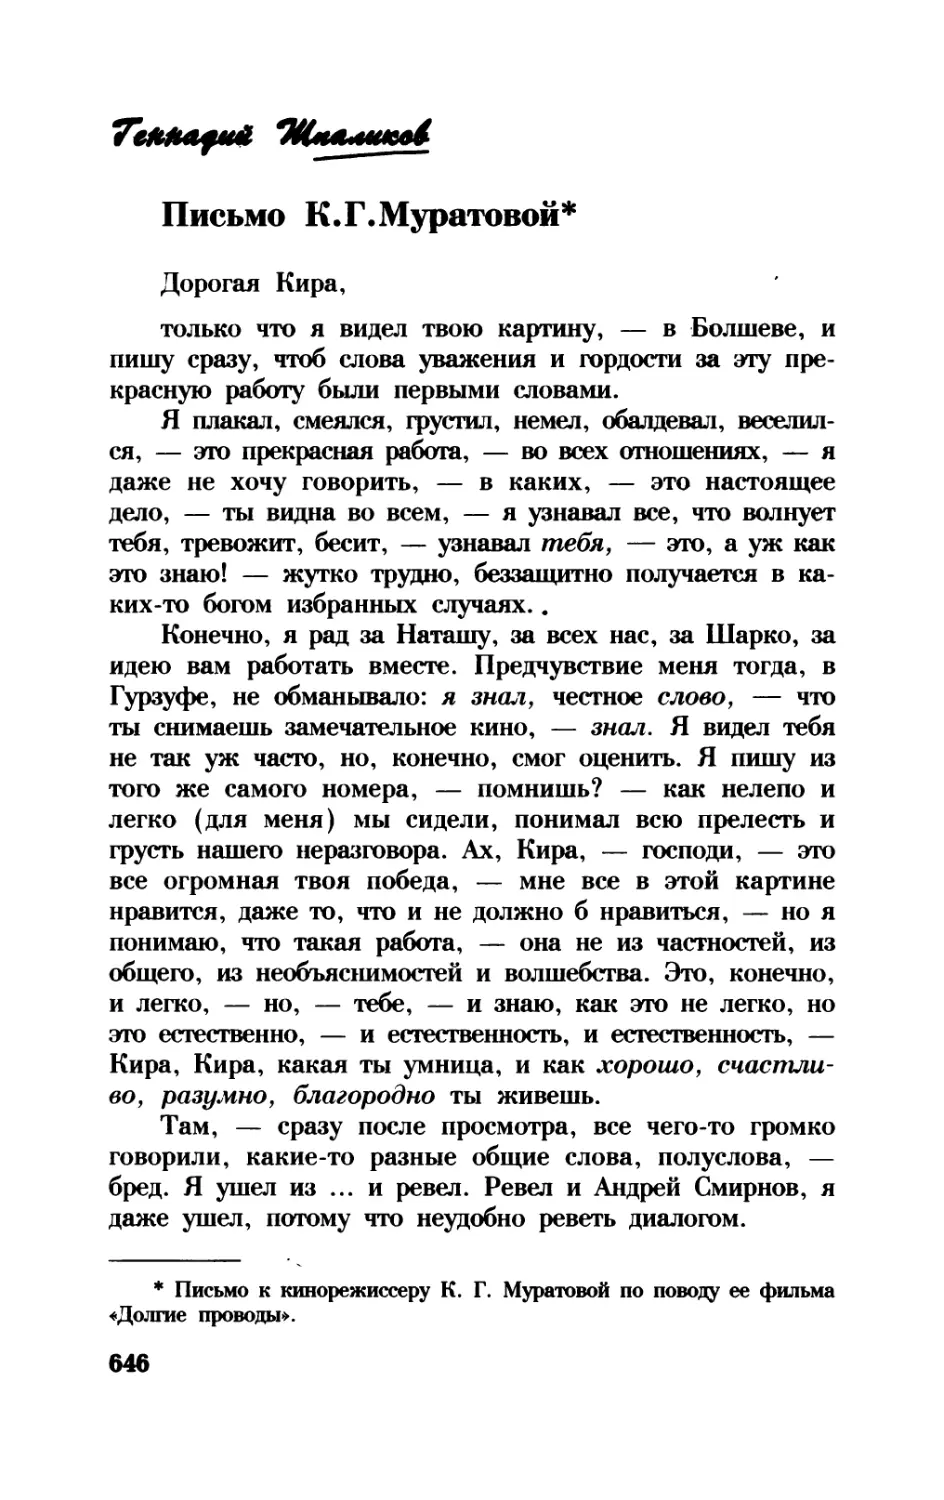 Письмо К.Г. Муратовой